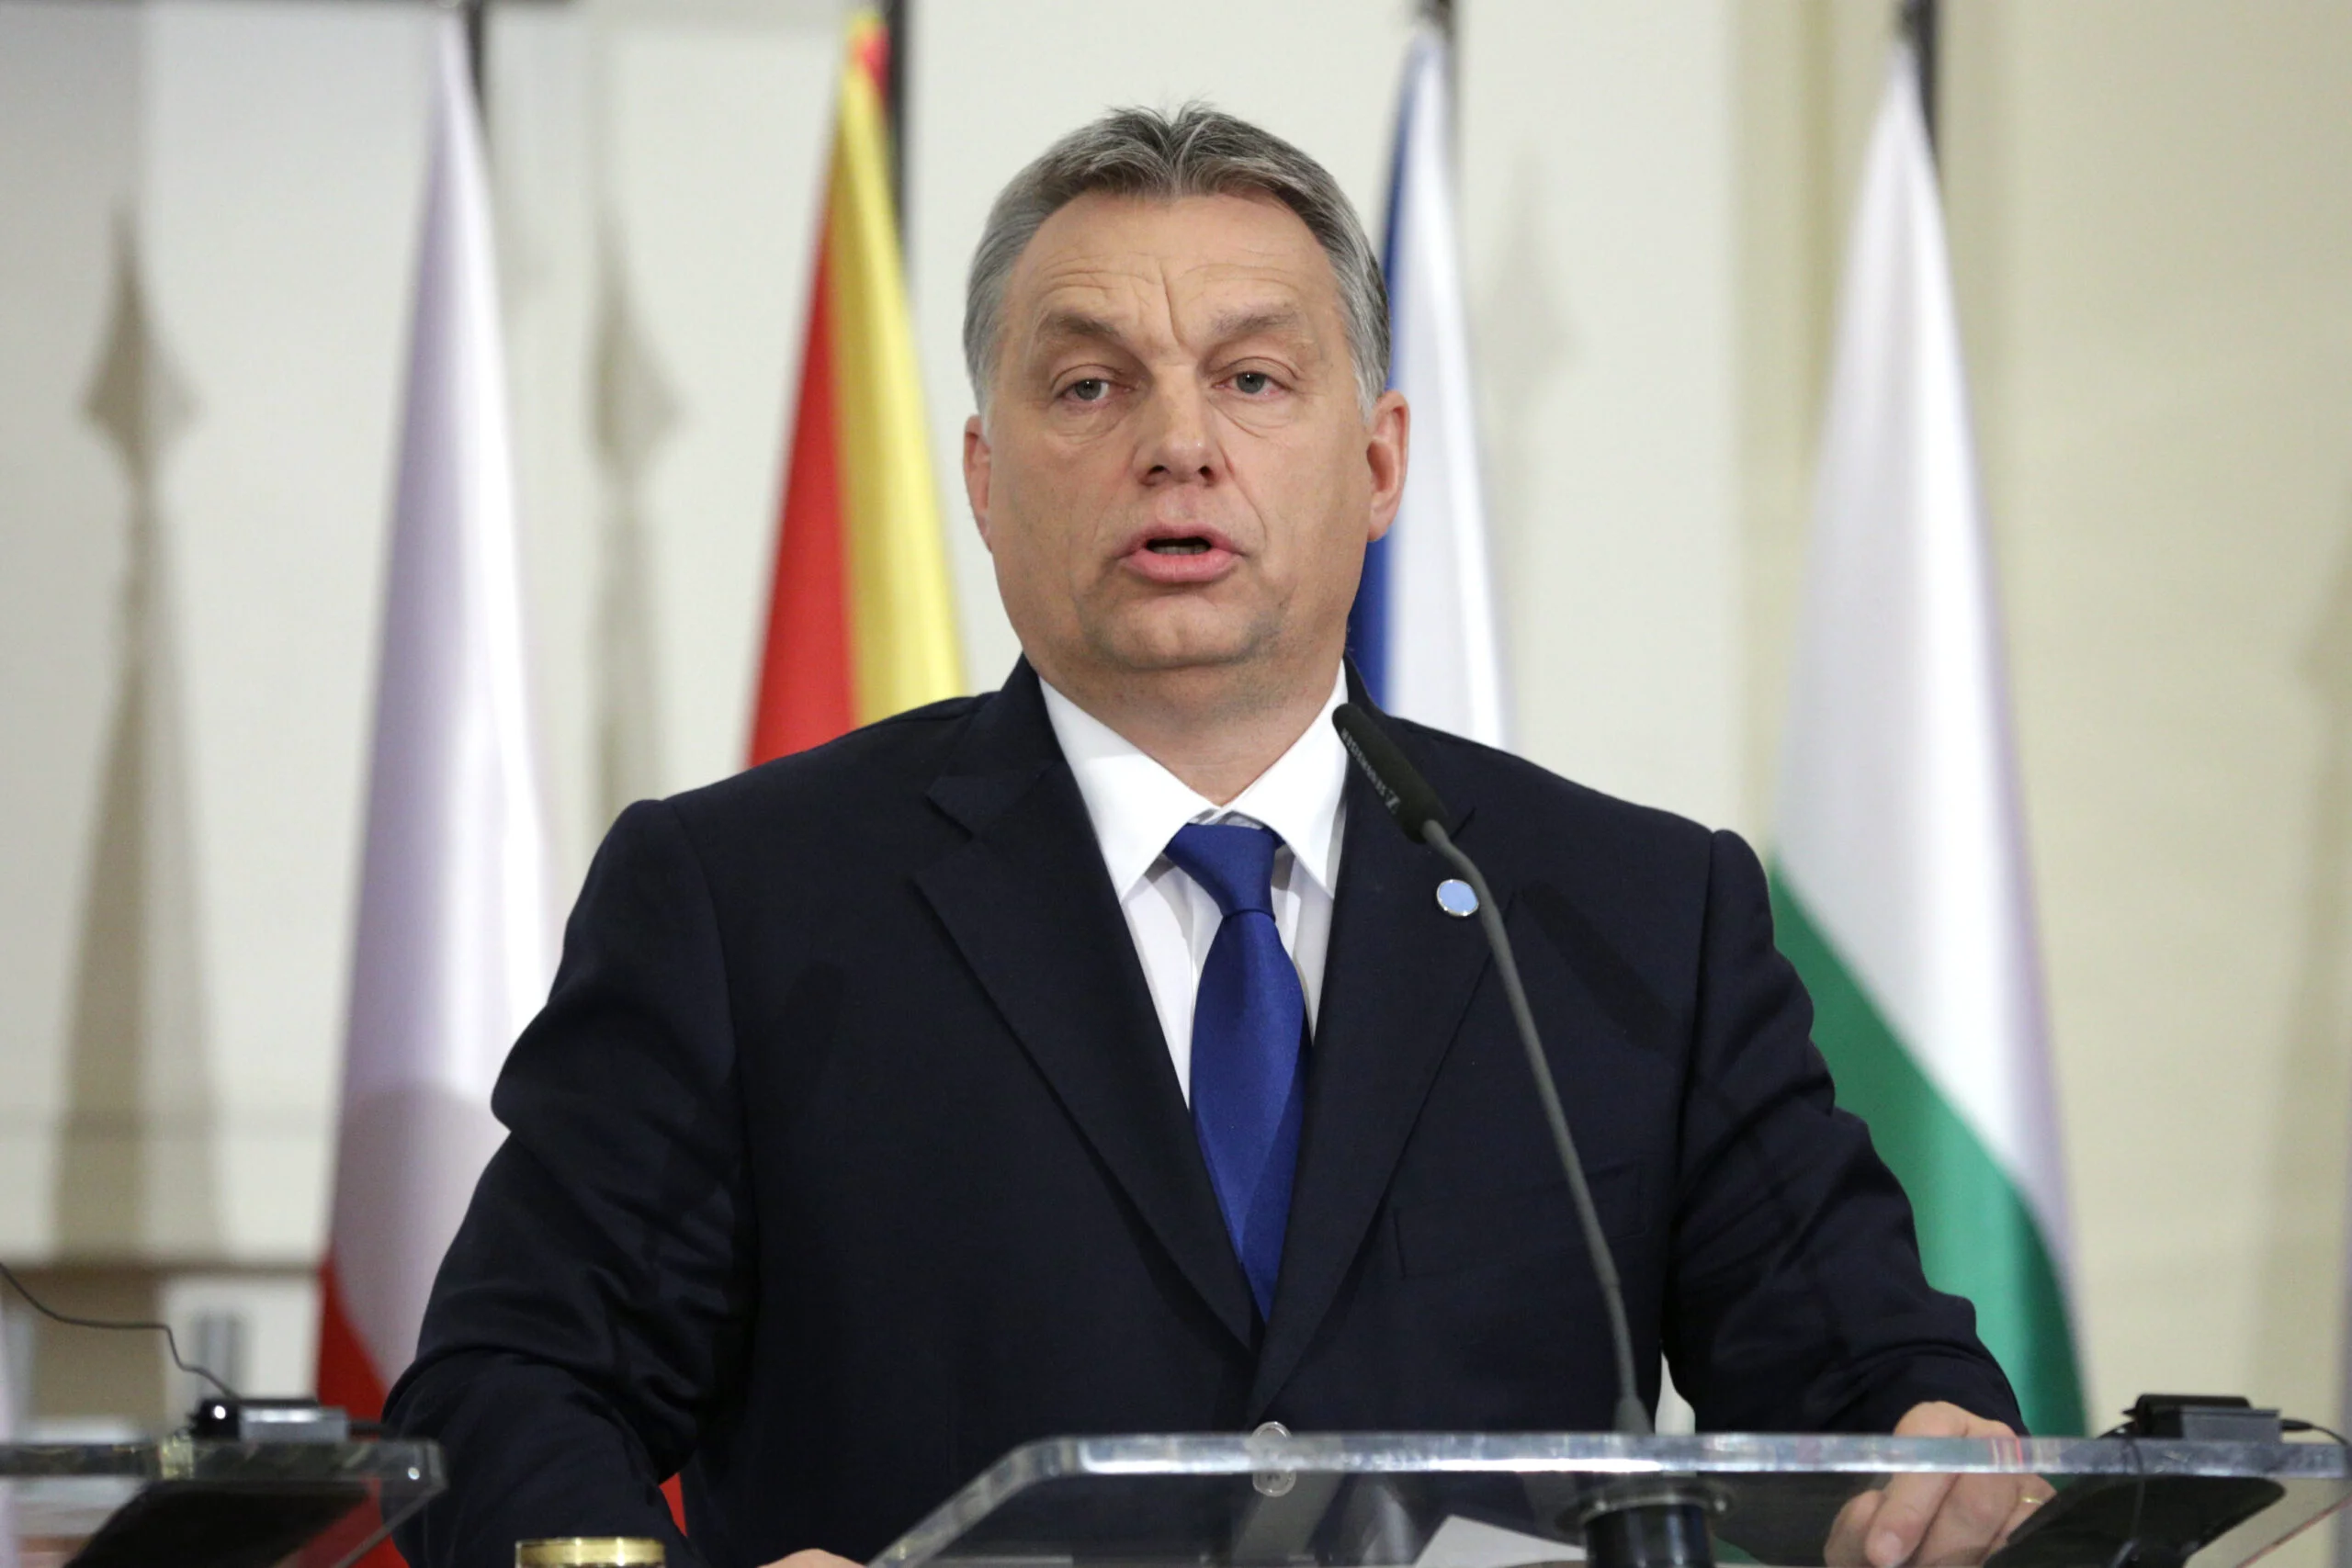 Viktor Orban, după tentativa de asasinat asupra lui Robert Fico: Trebuie să luptăm singuri pentru pace